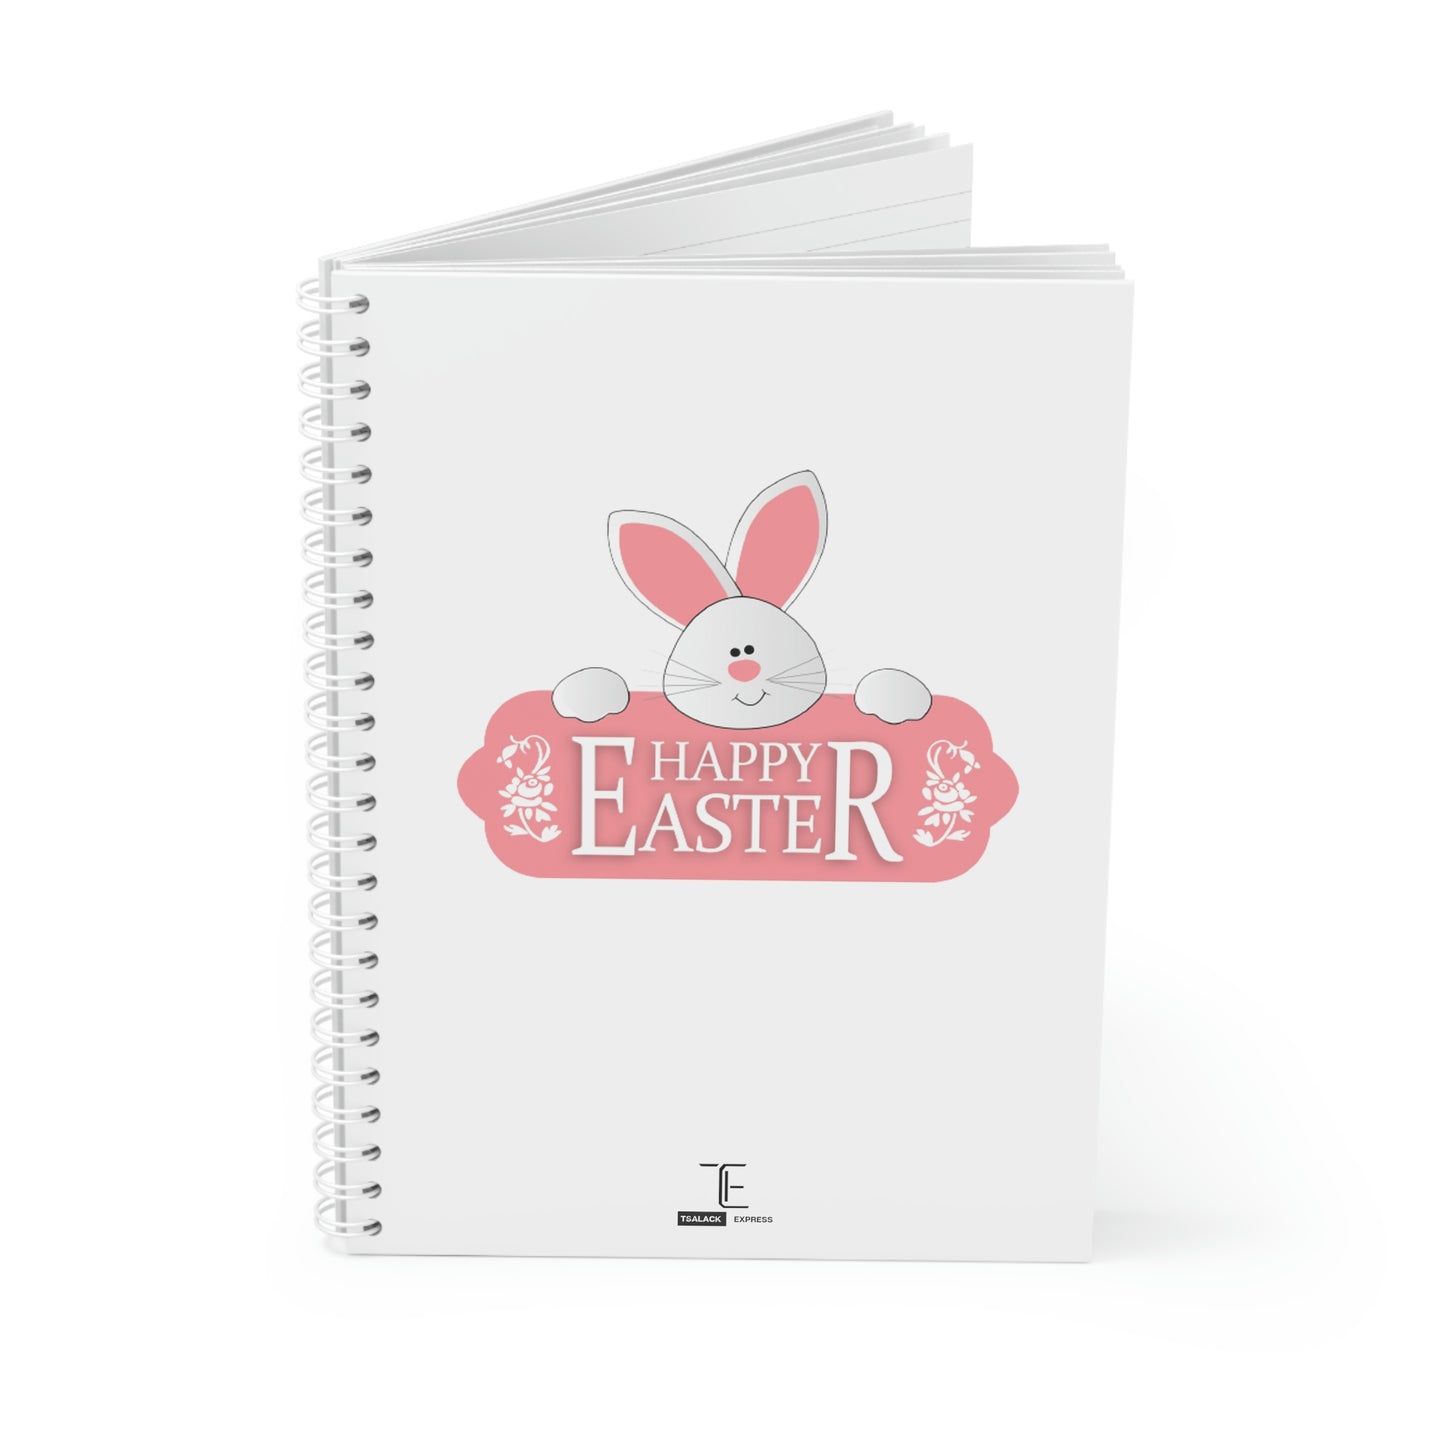 Tsalack Express Easter Spiral Notebook